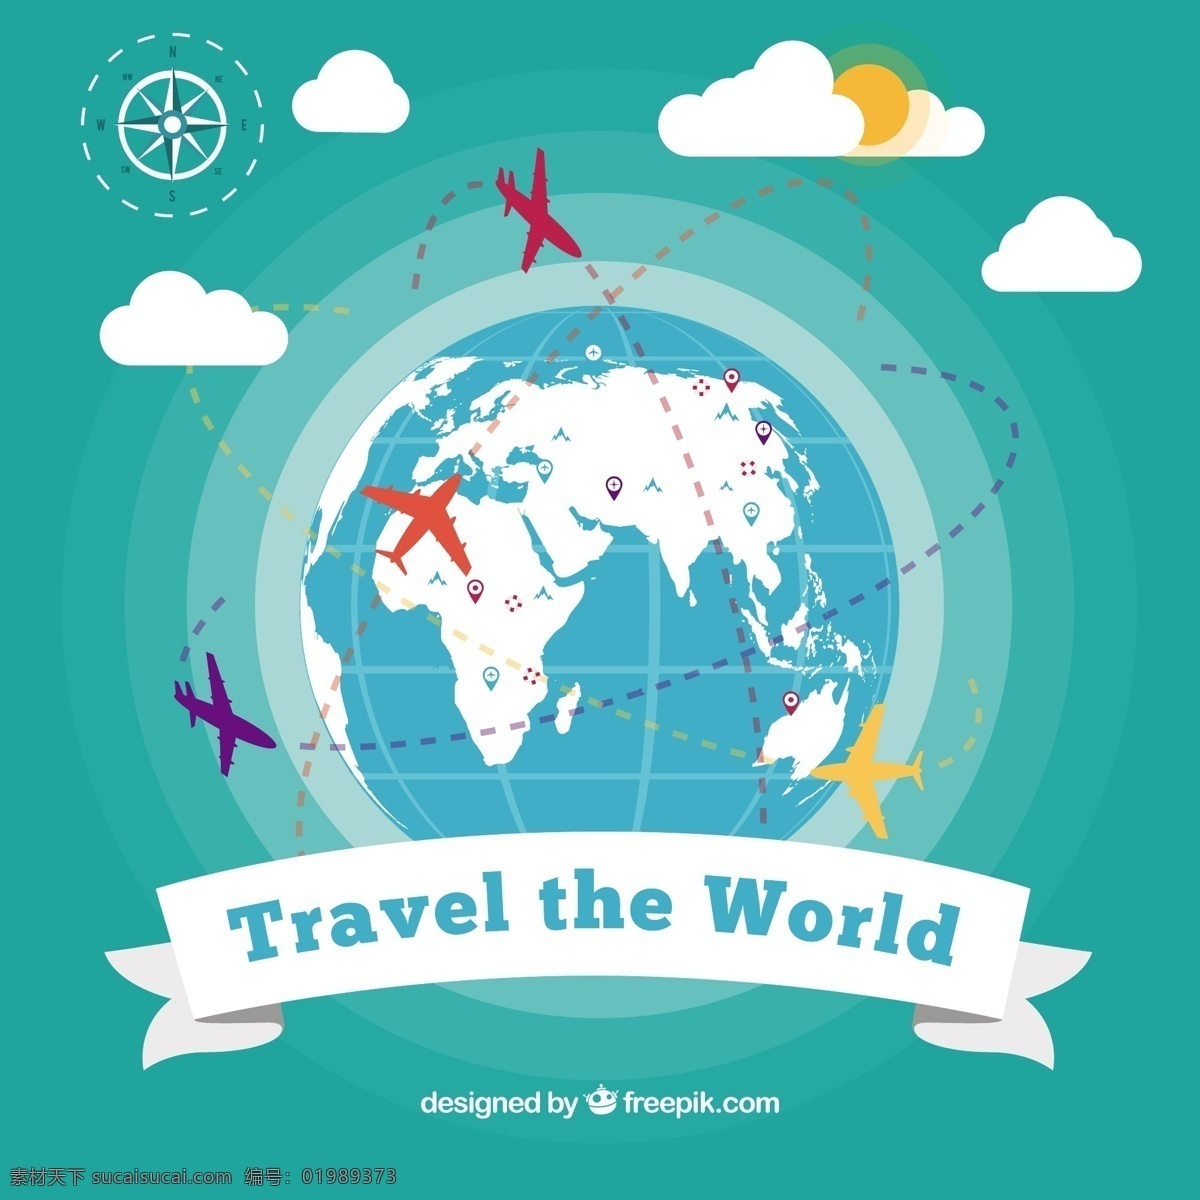 世界 背景 飞机 旅行 地图 世界地图 平 平面设计 旅游 度假 在世界范围内